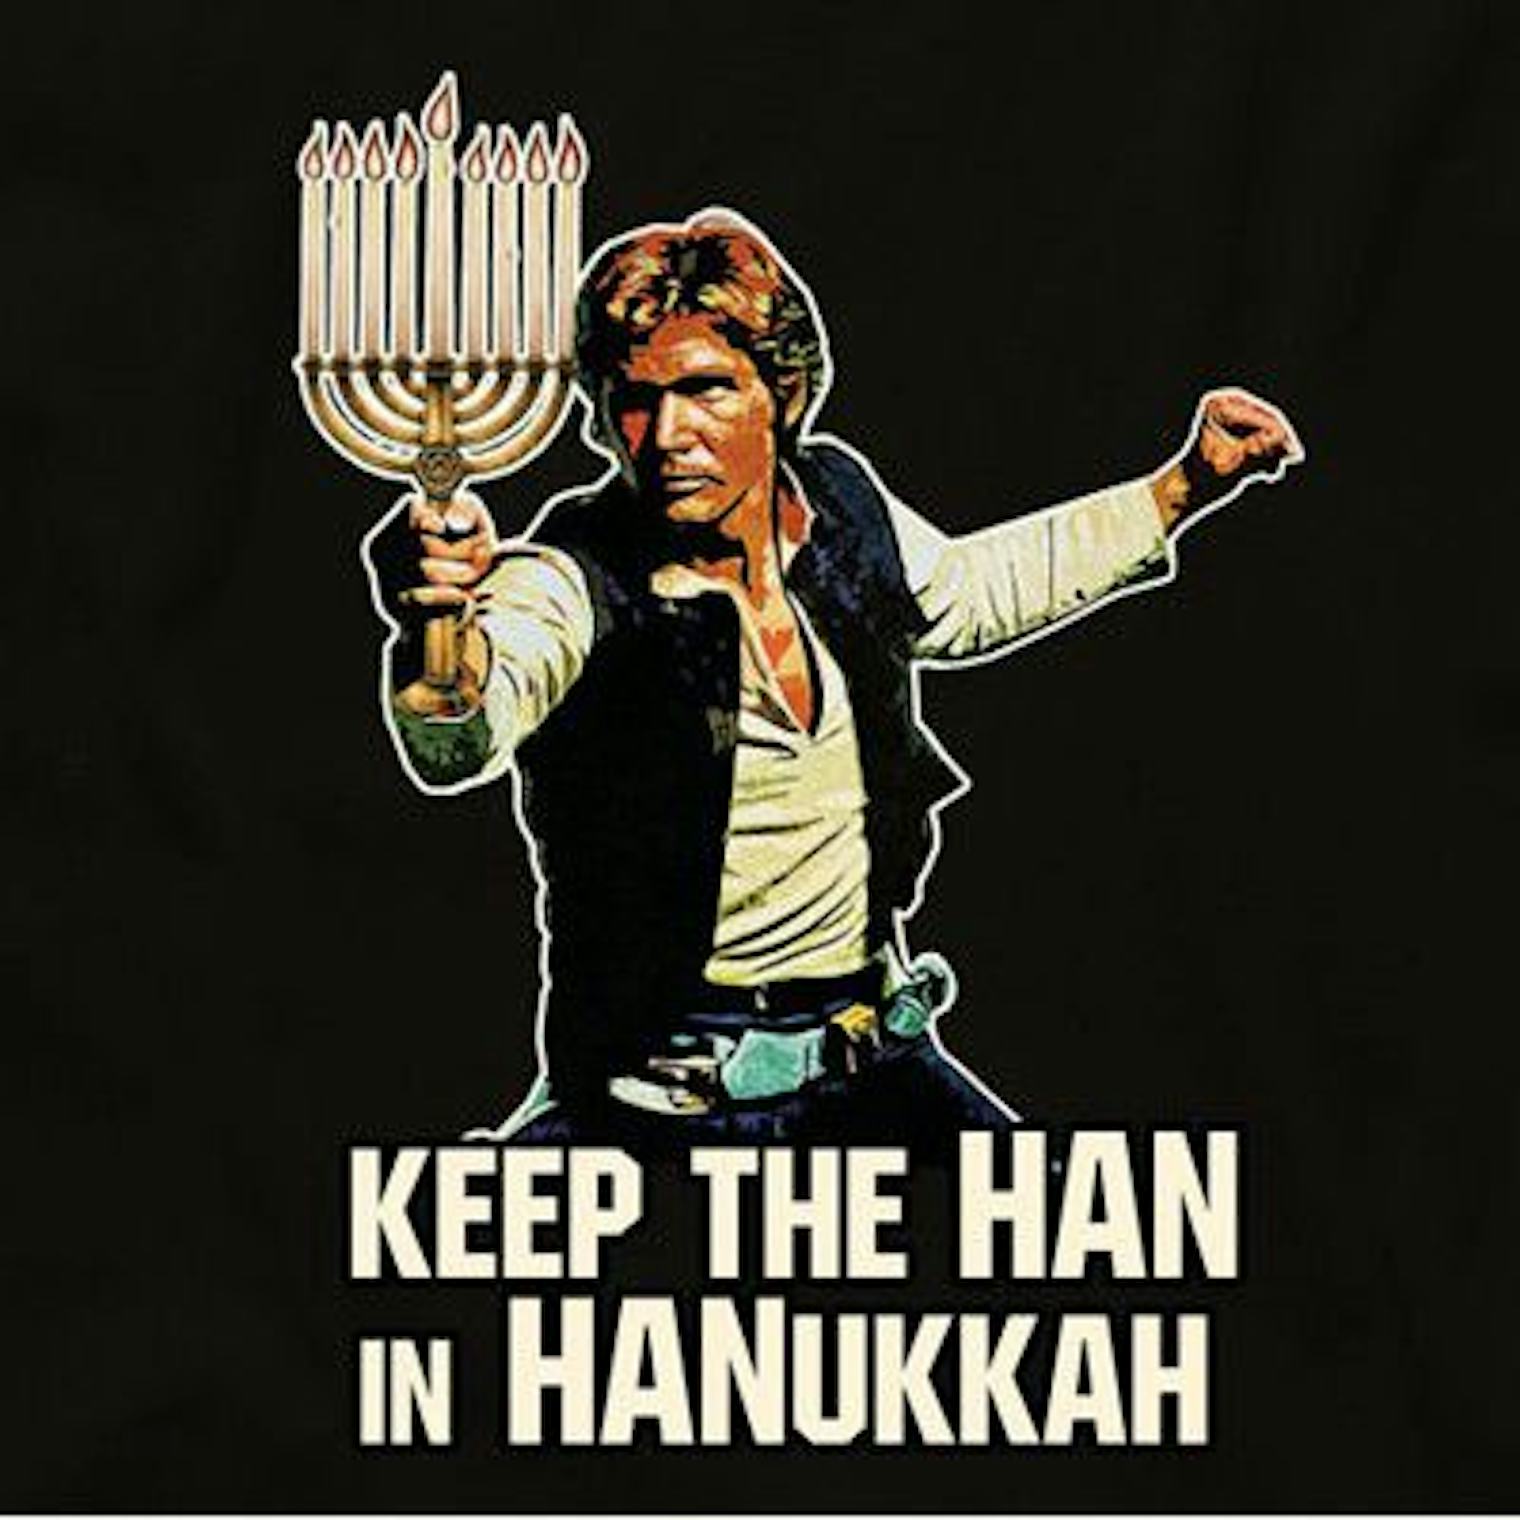 7-hanukkah-memes-that-will-keep-the-fun-going-all-season-long